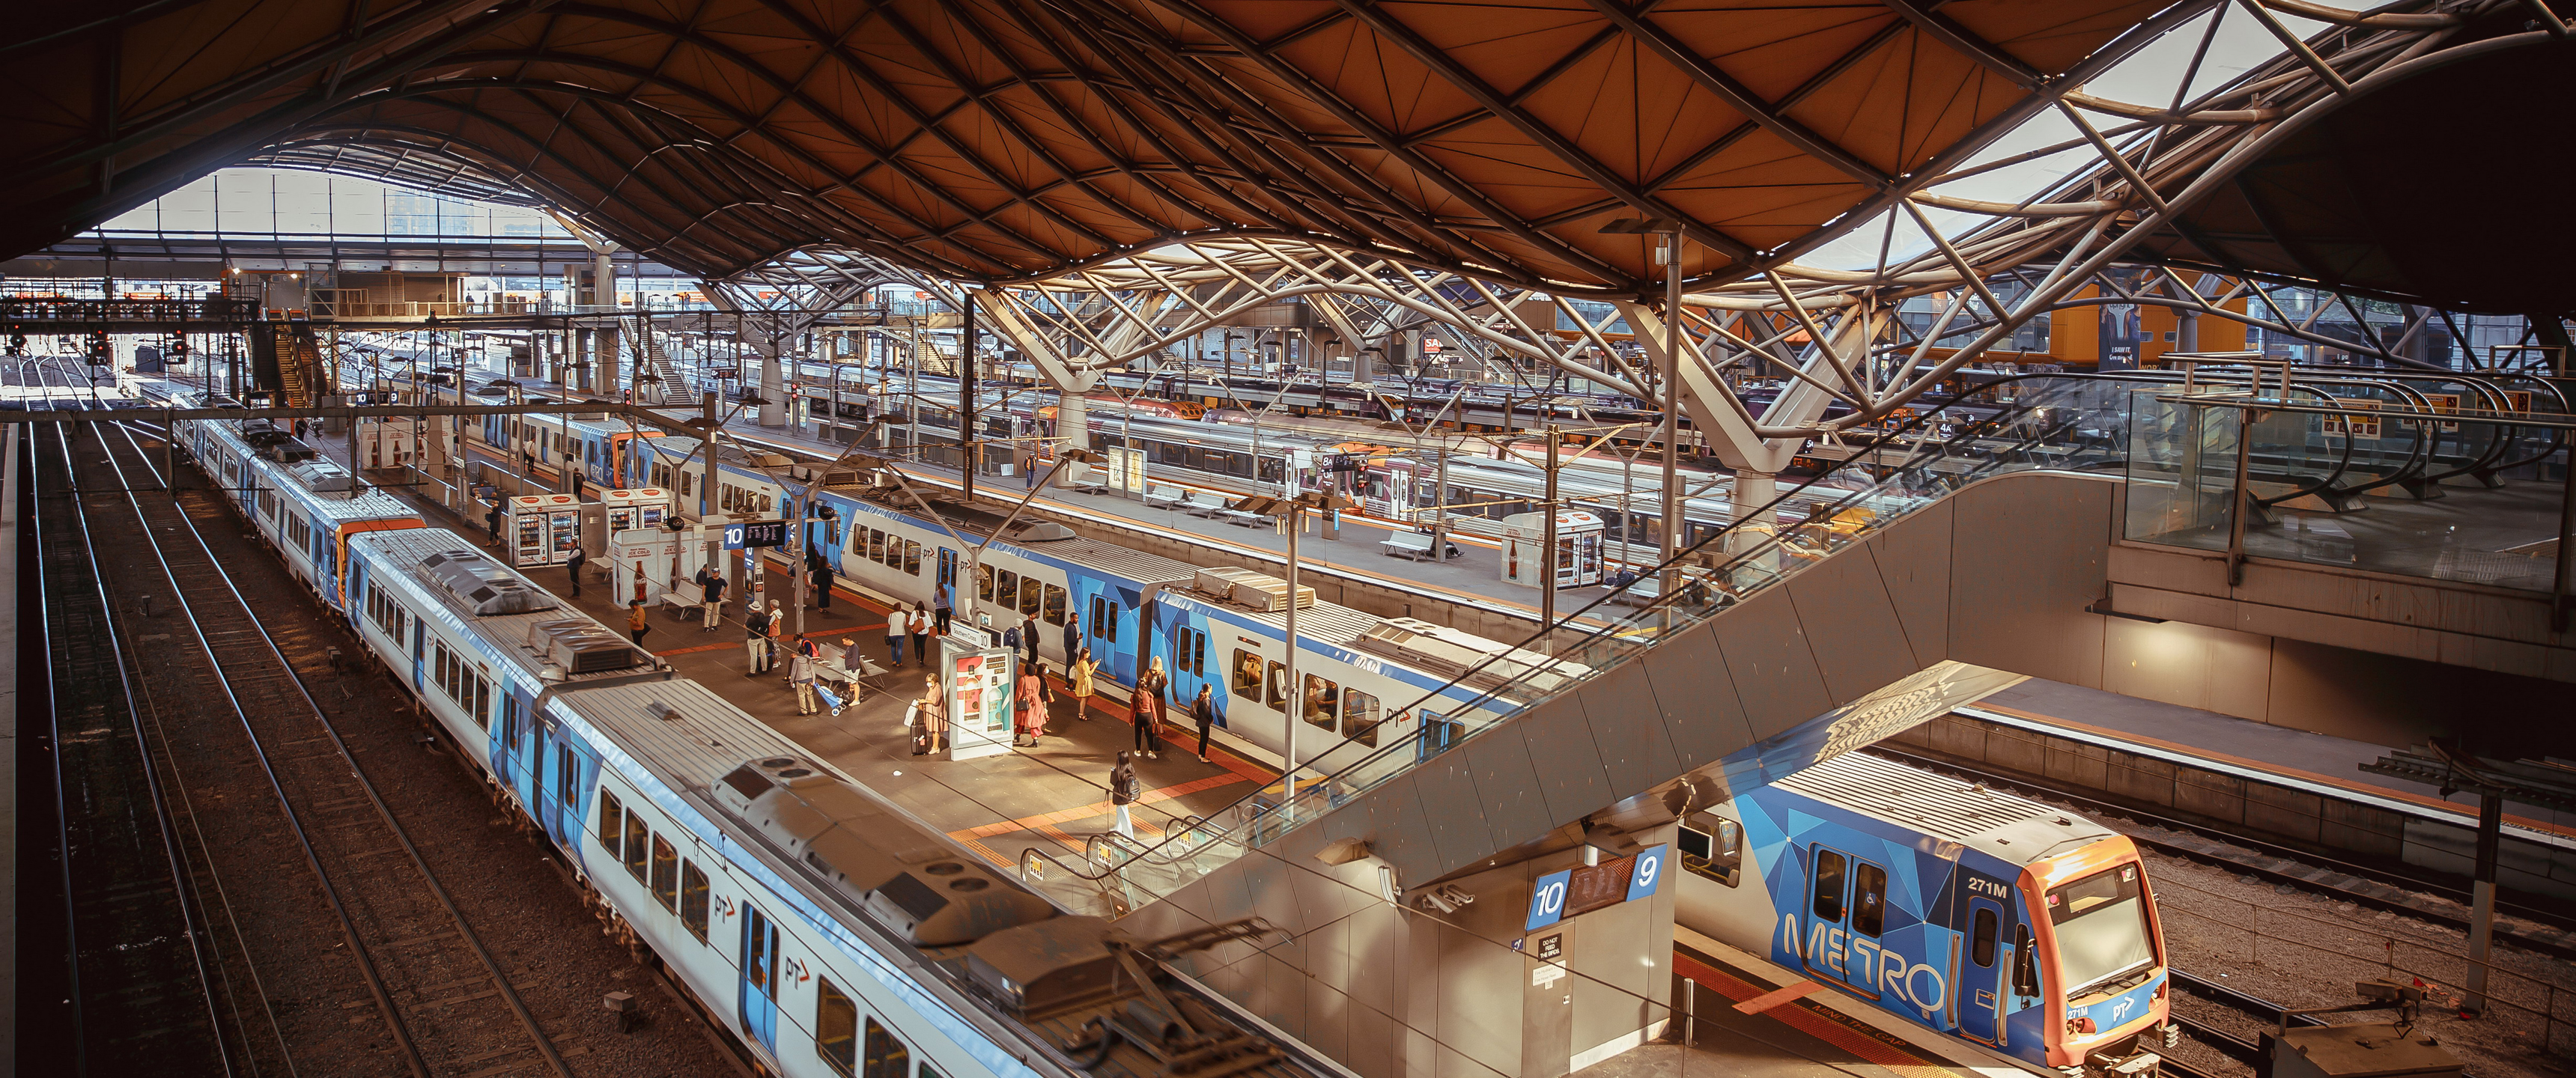 Melbourne City Australia Train Train Station 3440x1440